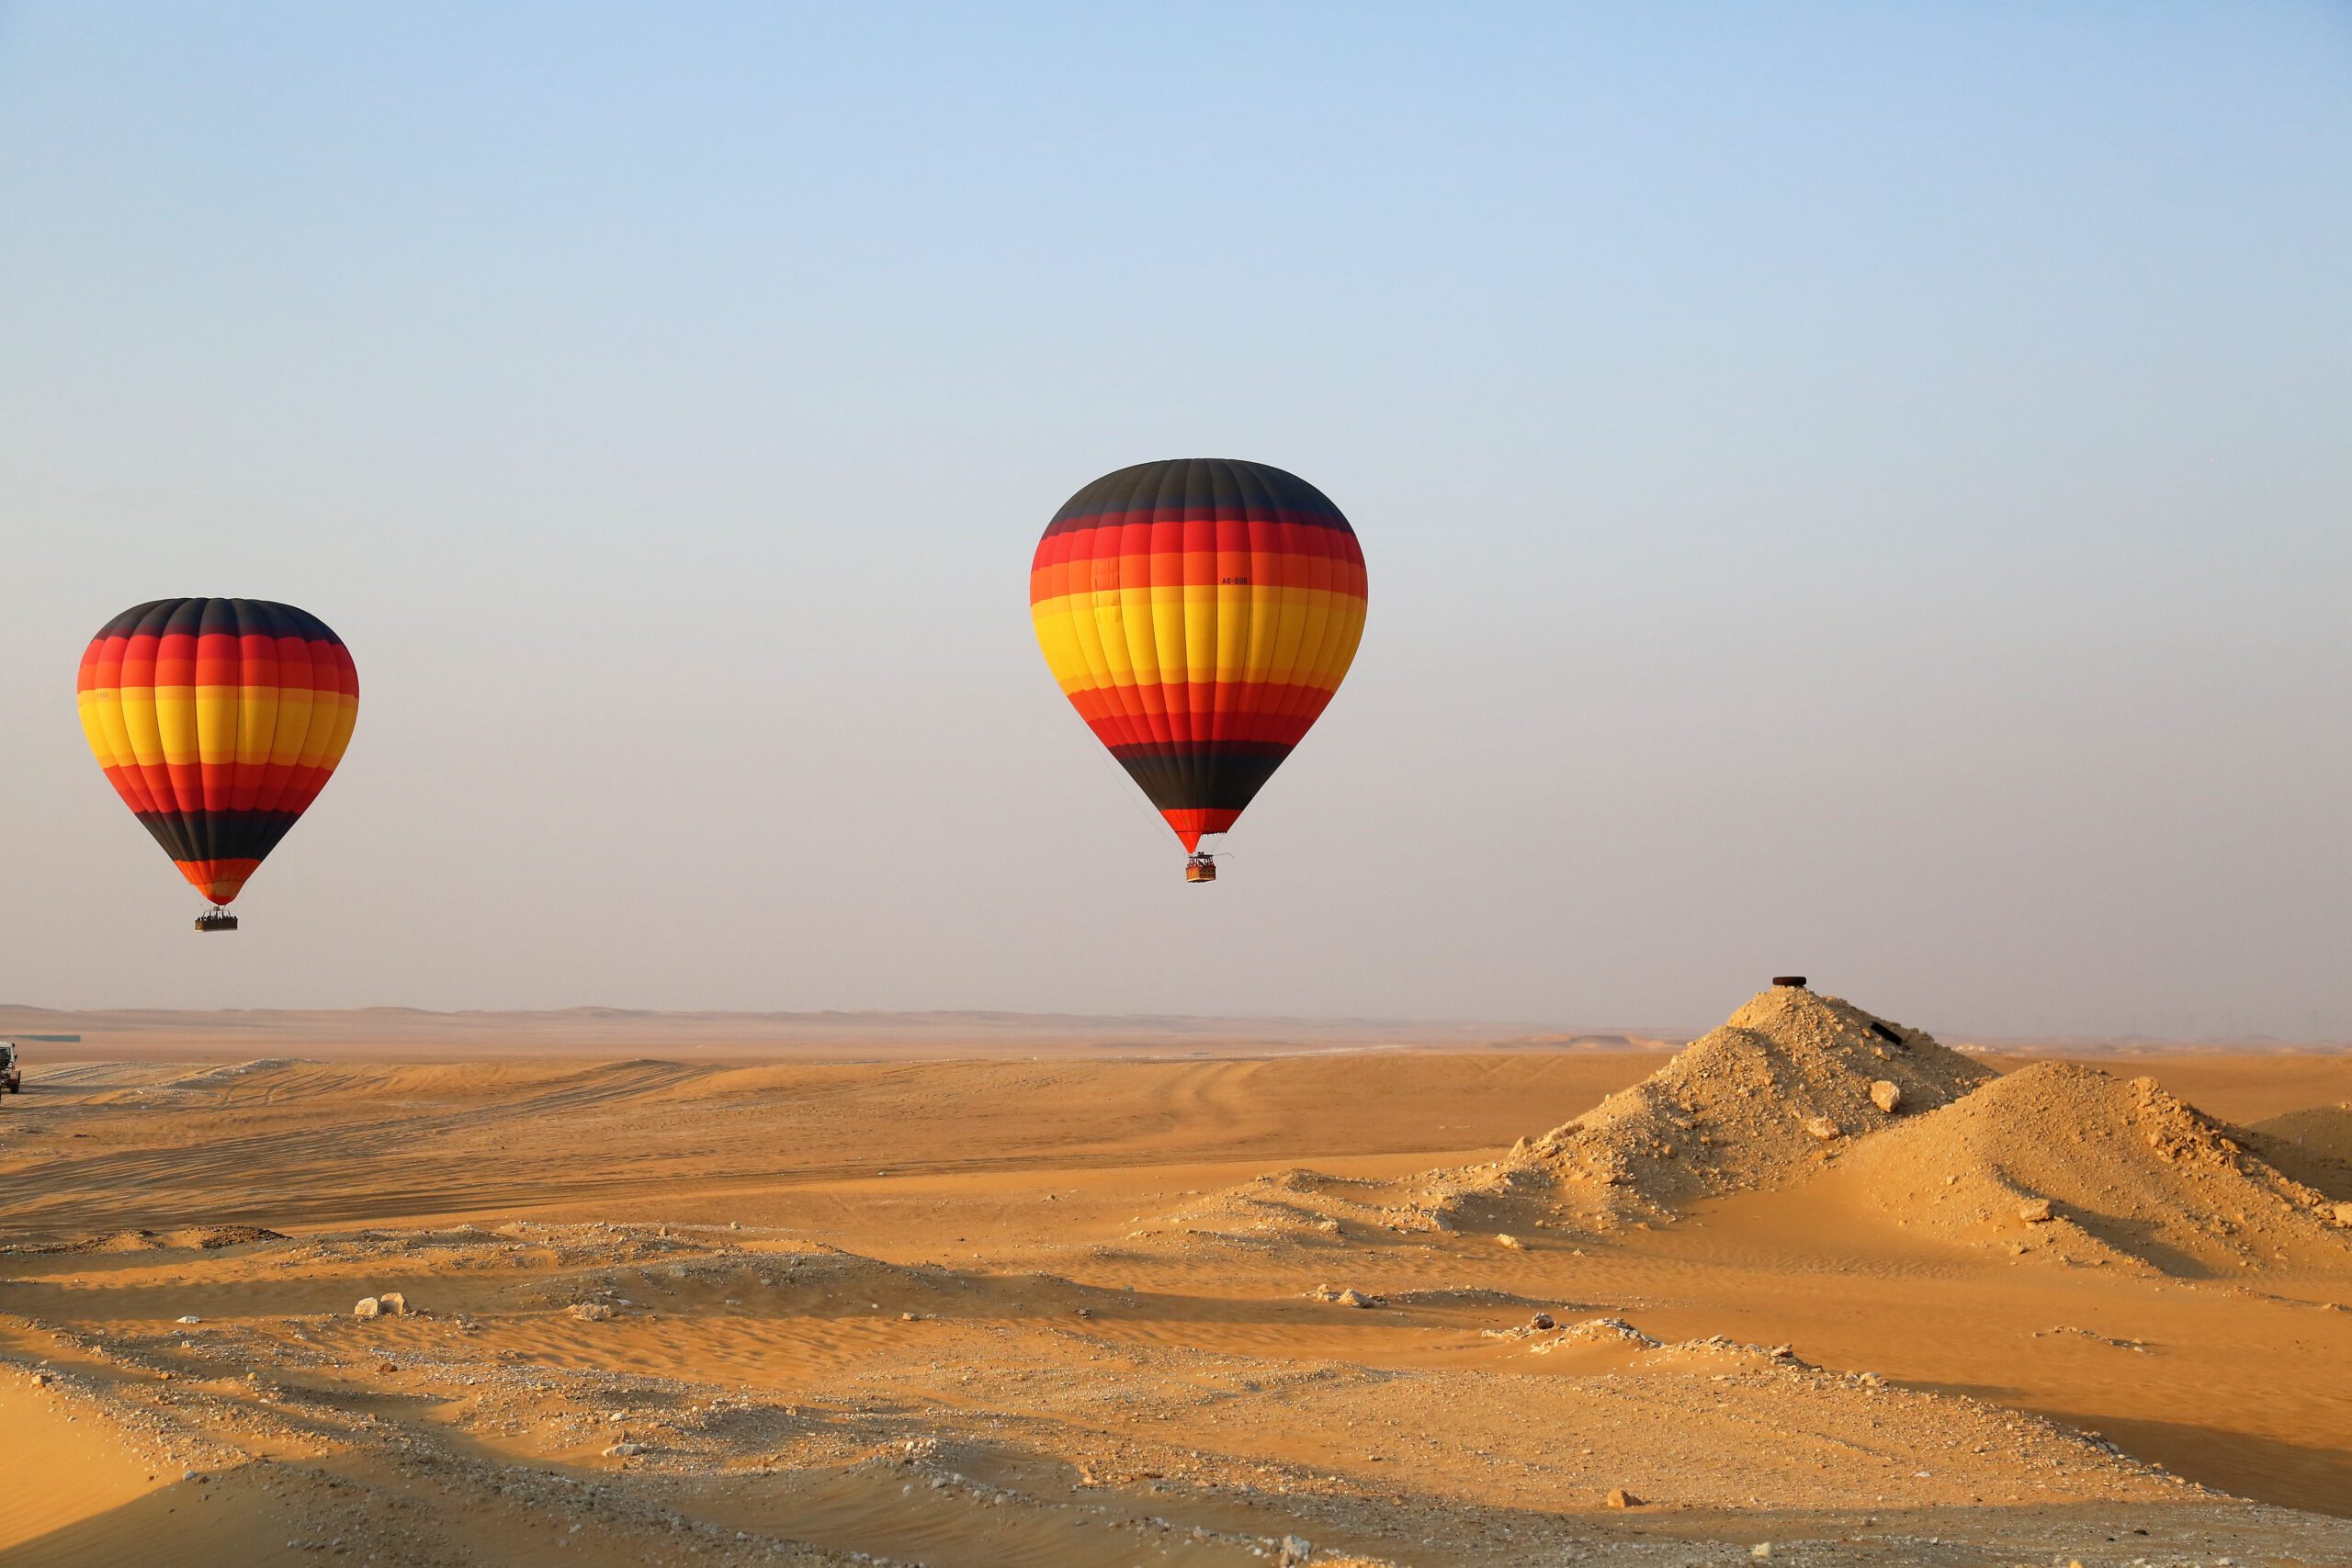 Dubai hot air balloon rides - Sunrise